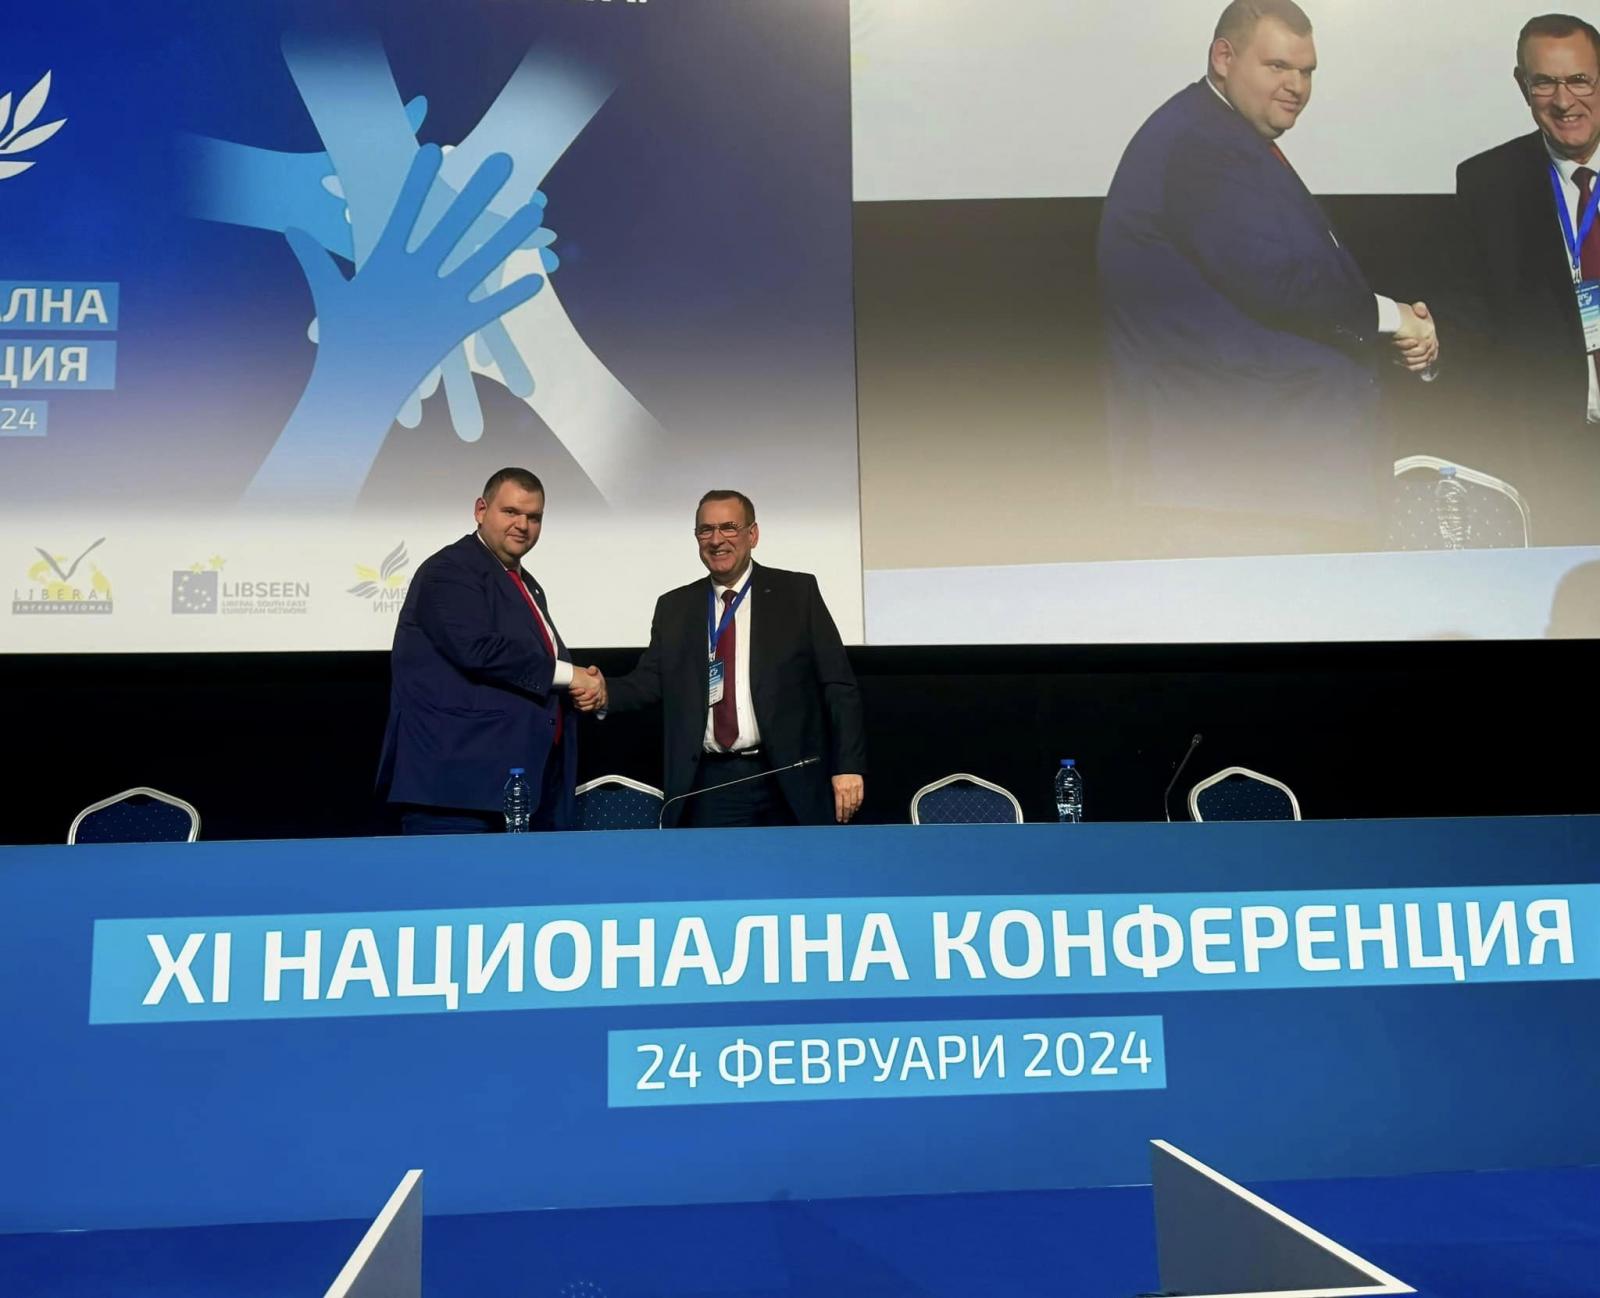 Bulgaristan’da HÖH Partisi’nin 11’inci kurultayında Çakırov ve Peevski eş başkan seçildi